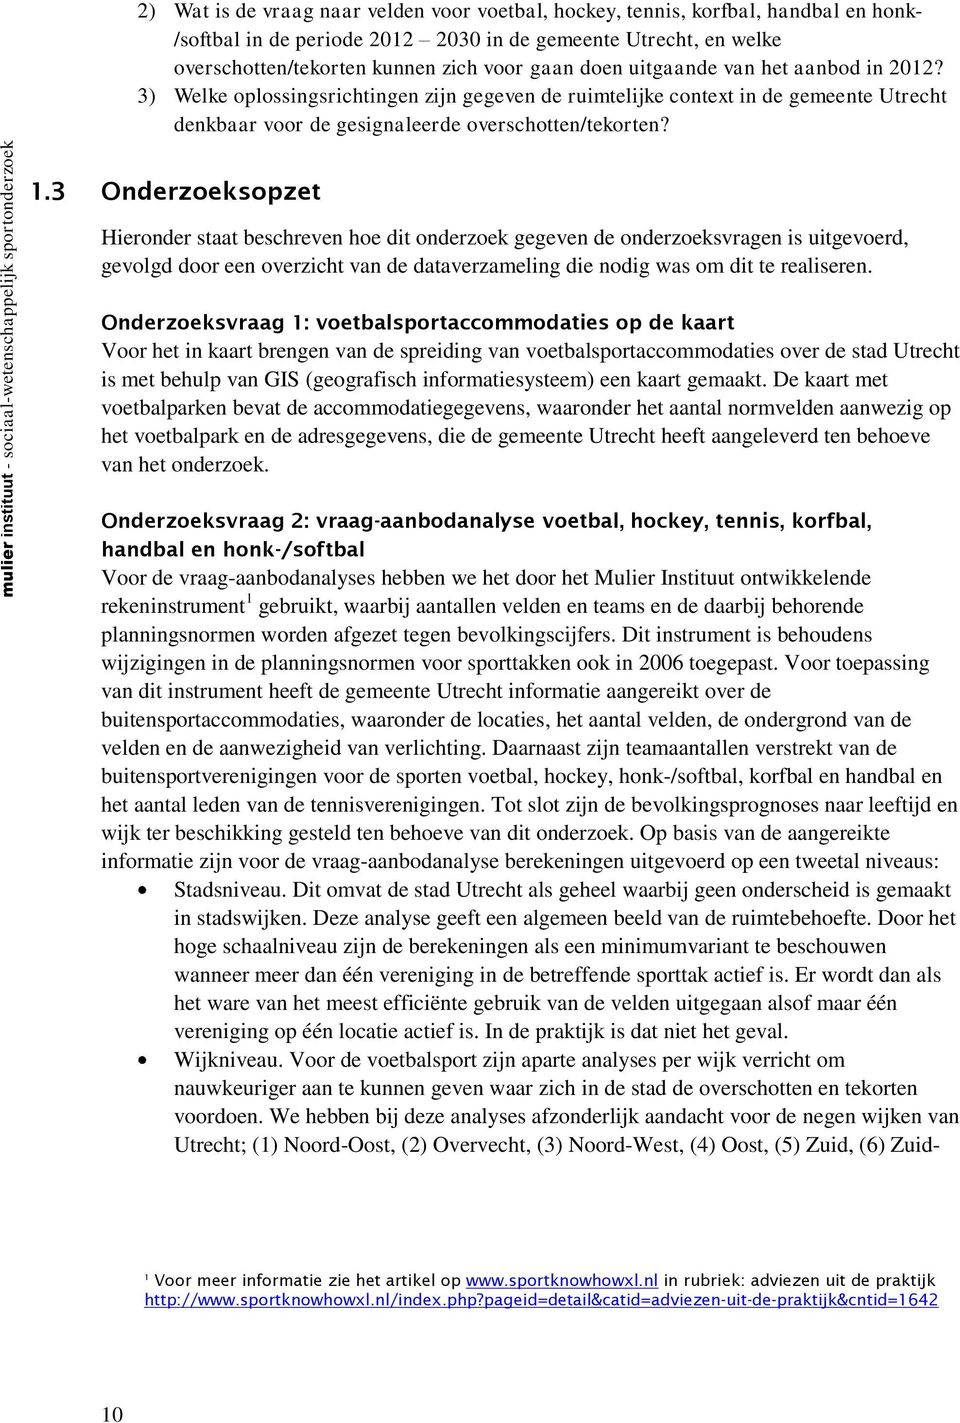 mulier instituut - sociaal-wetenschappelijk sportonderzoek 1.